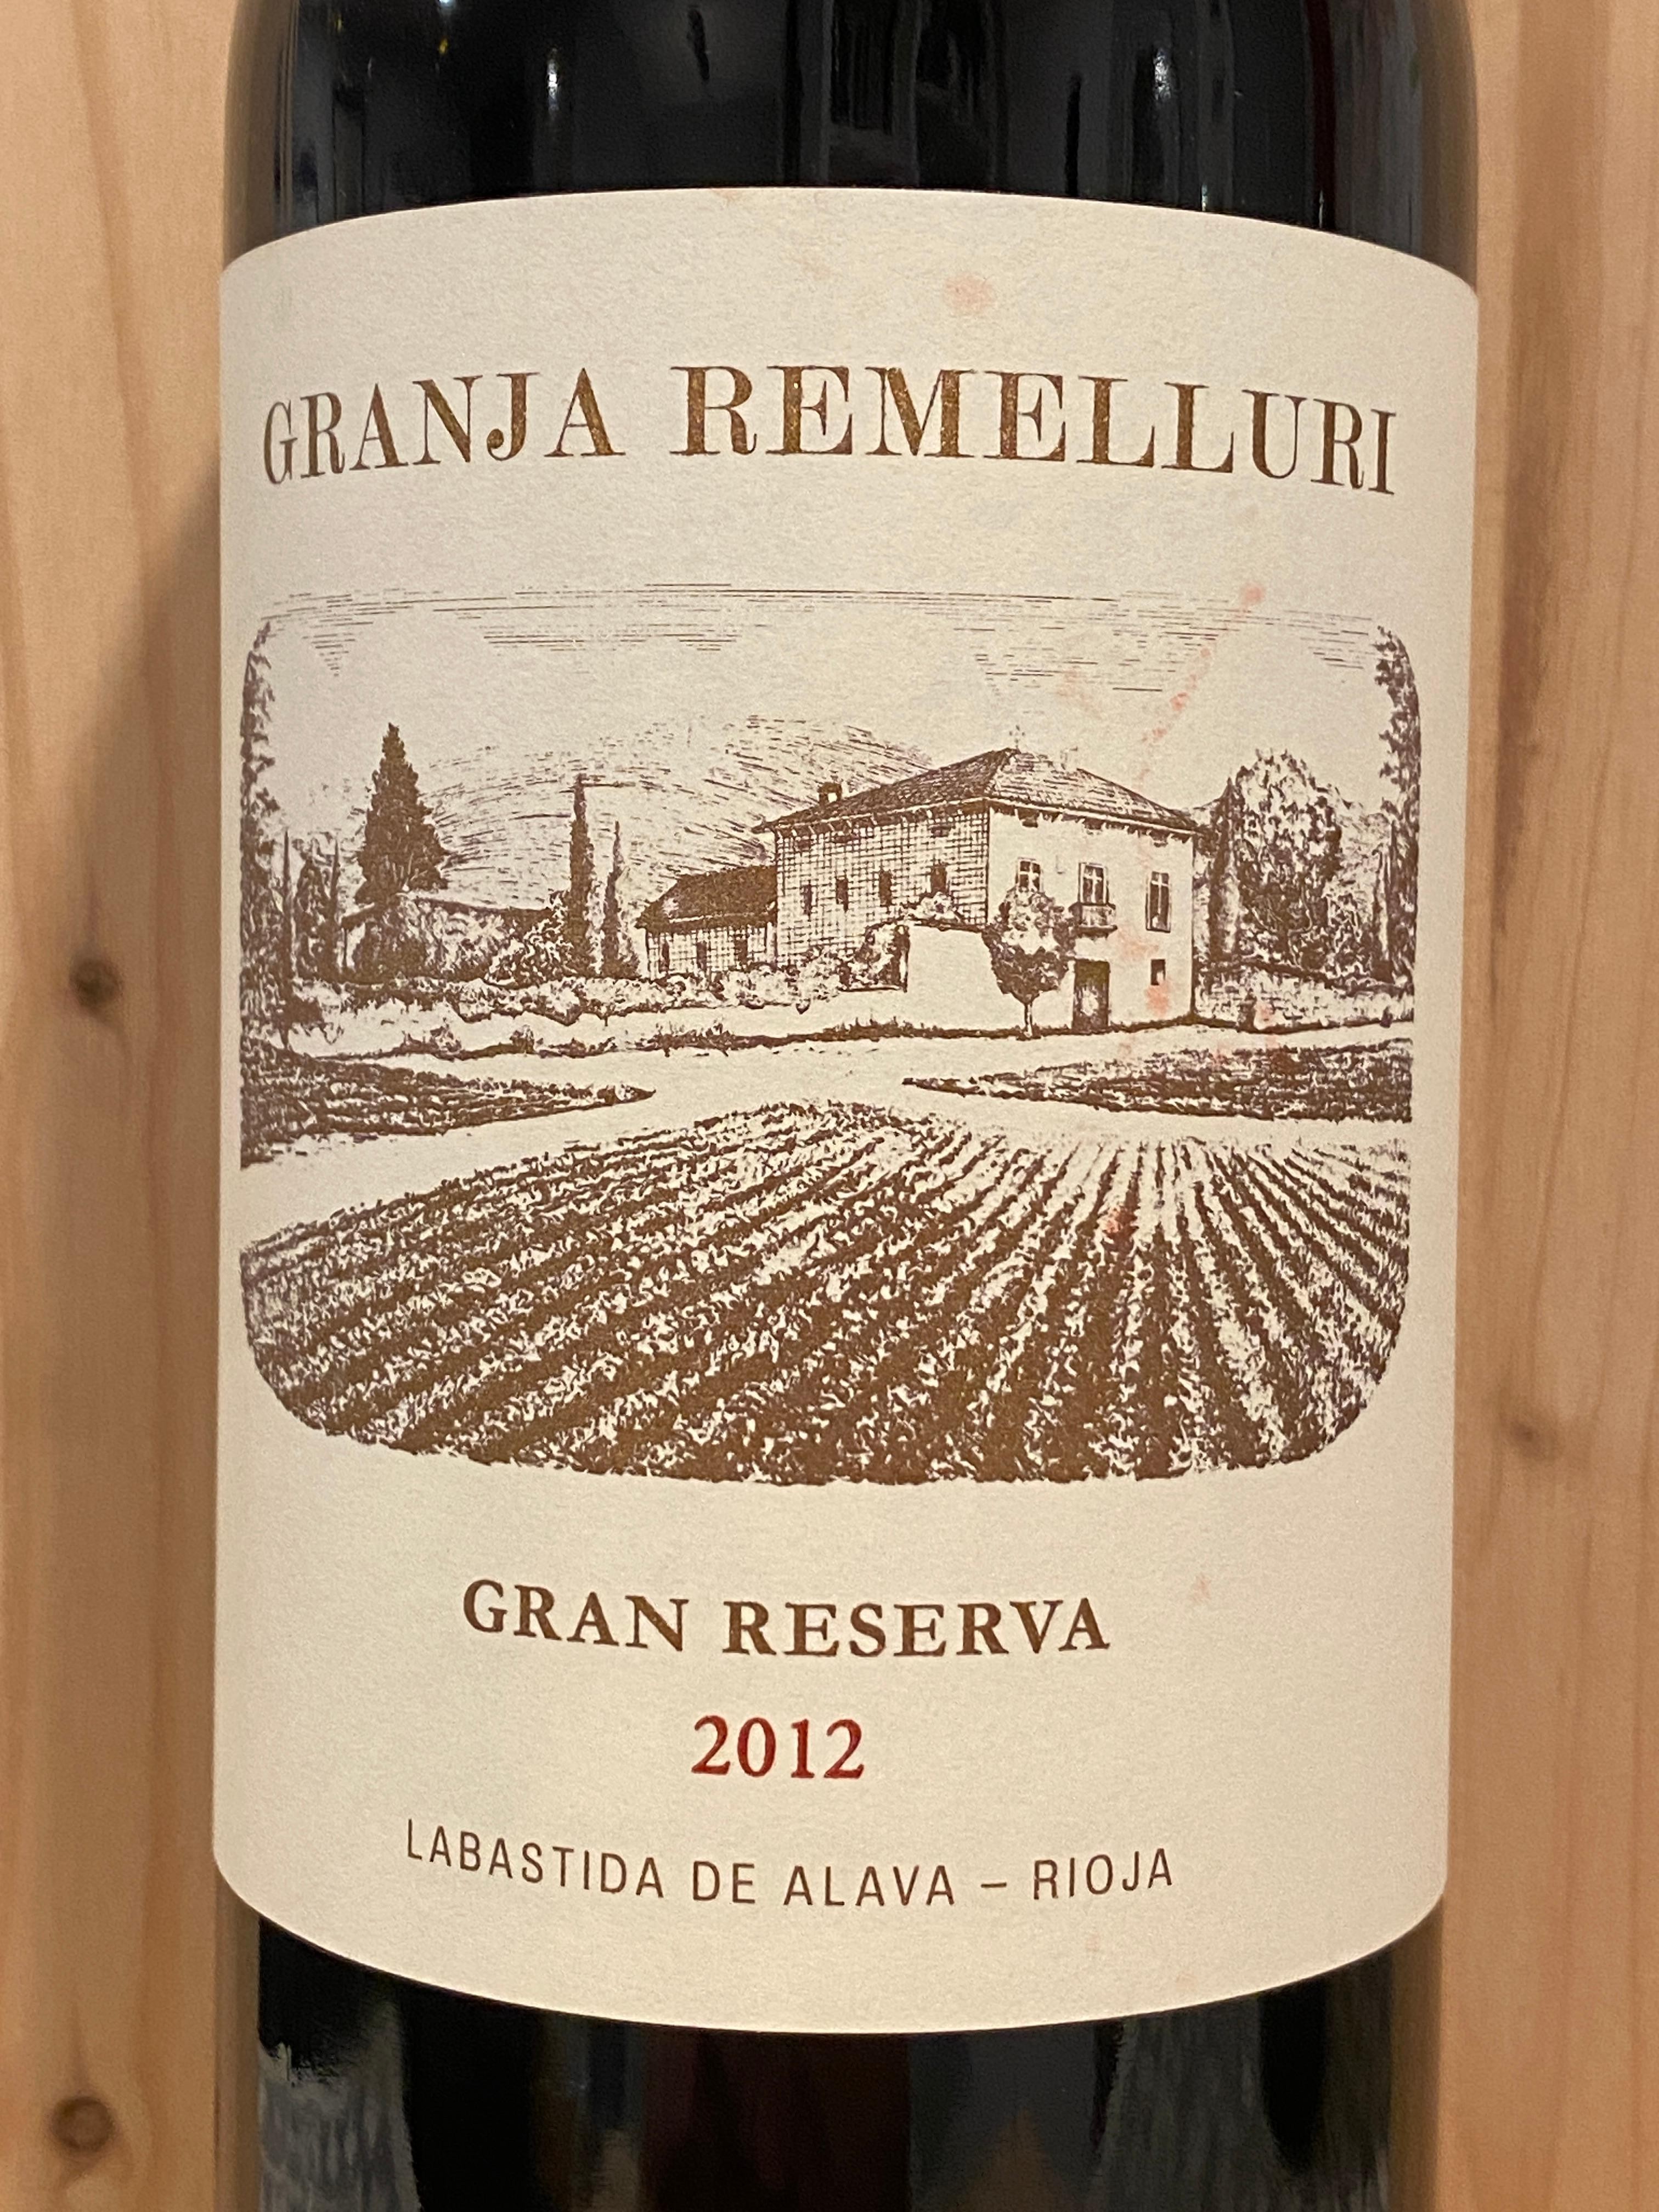 Remelluri "Granja Remelluri" Gran Reserva 2012: Rioja, Spain